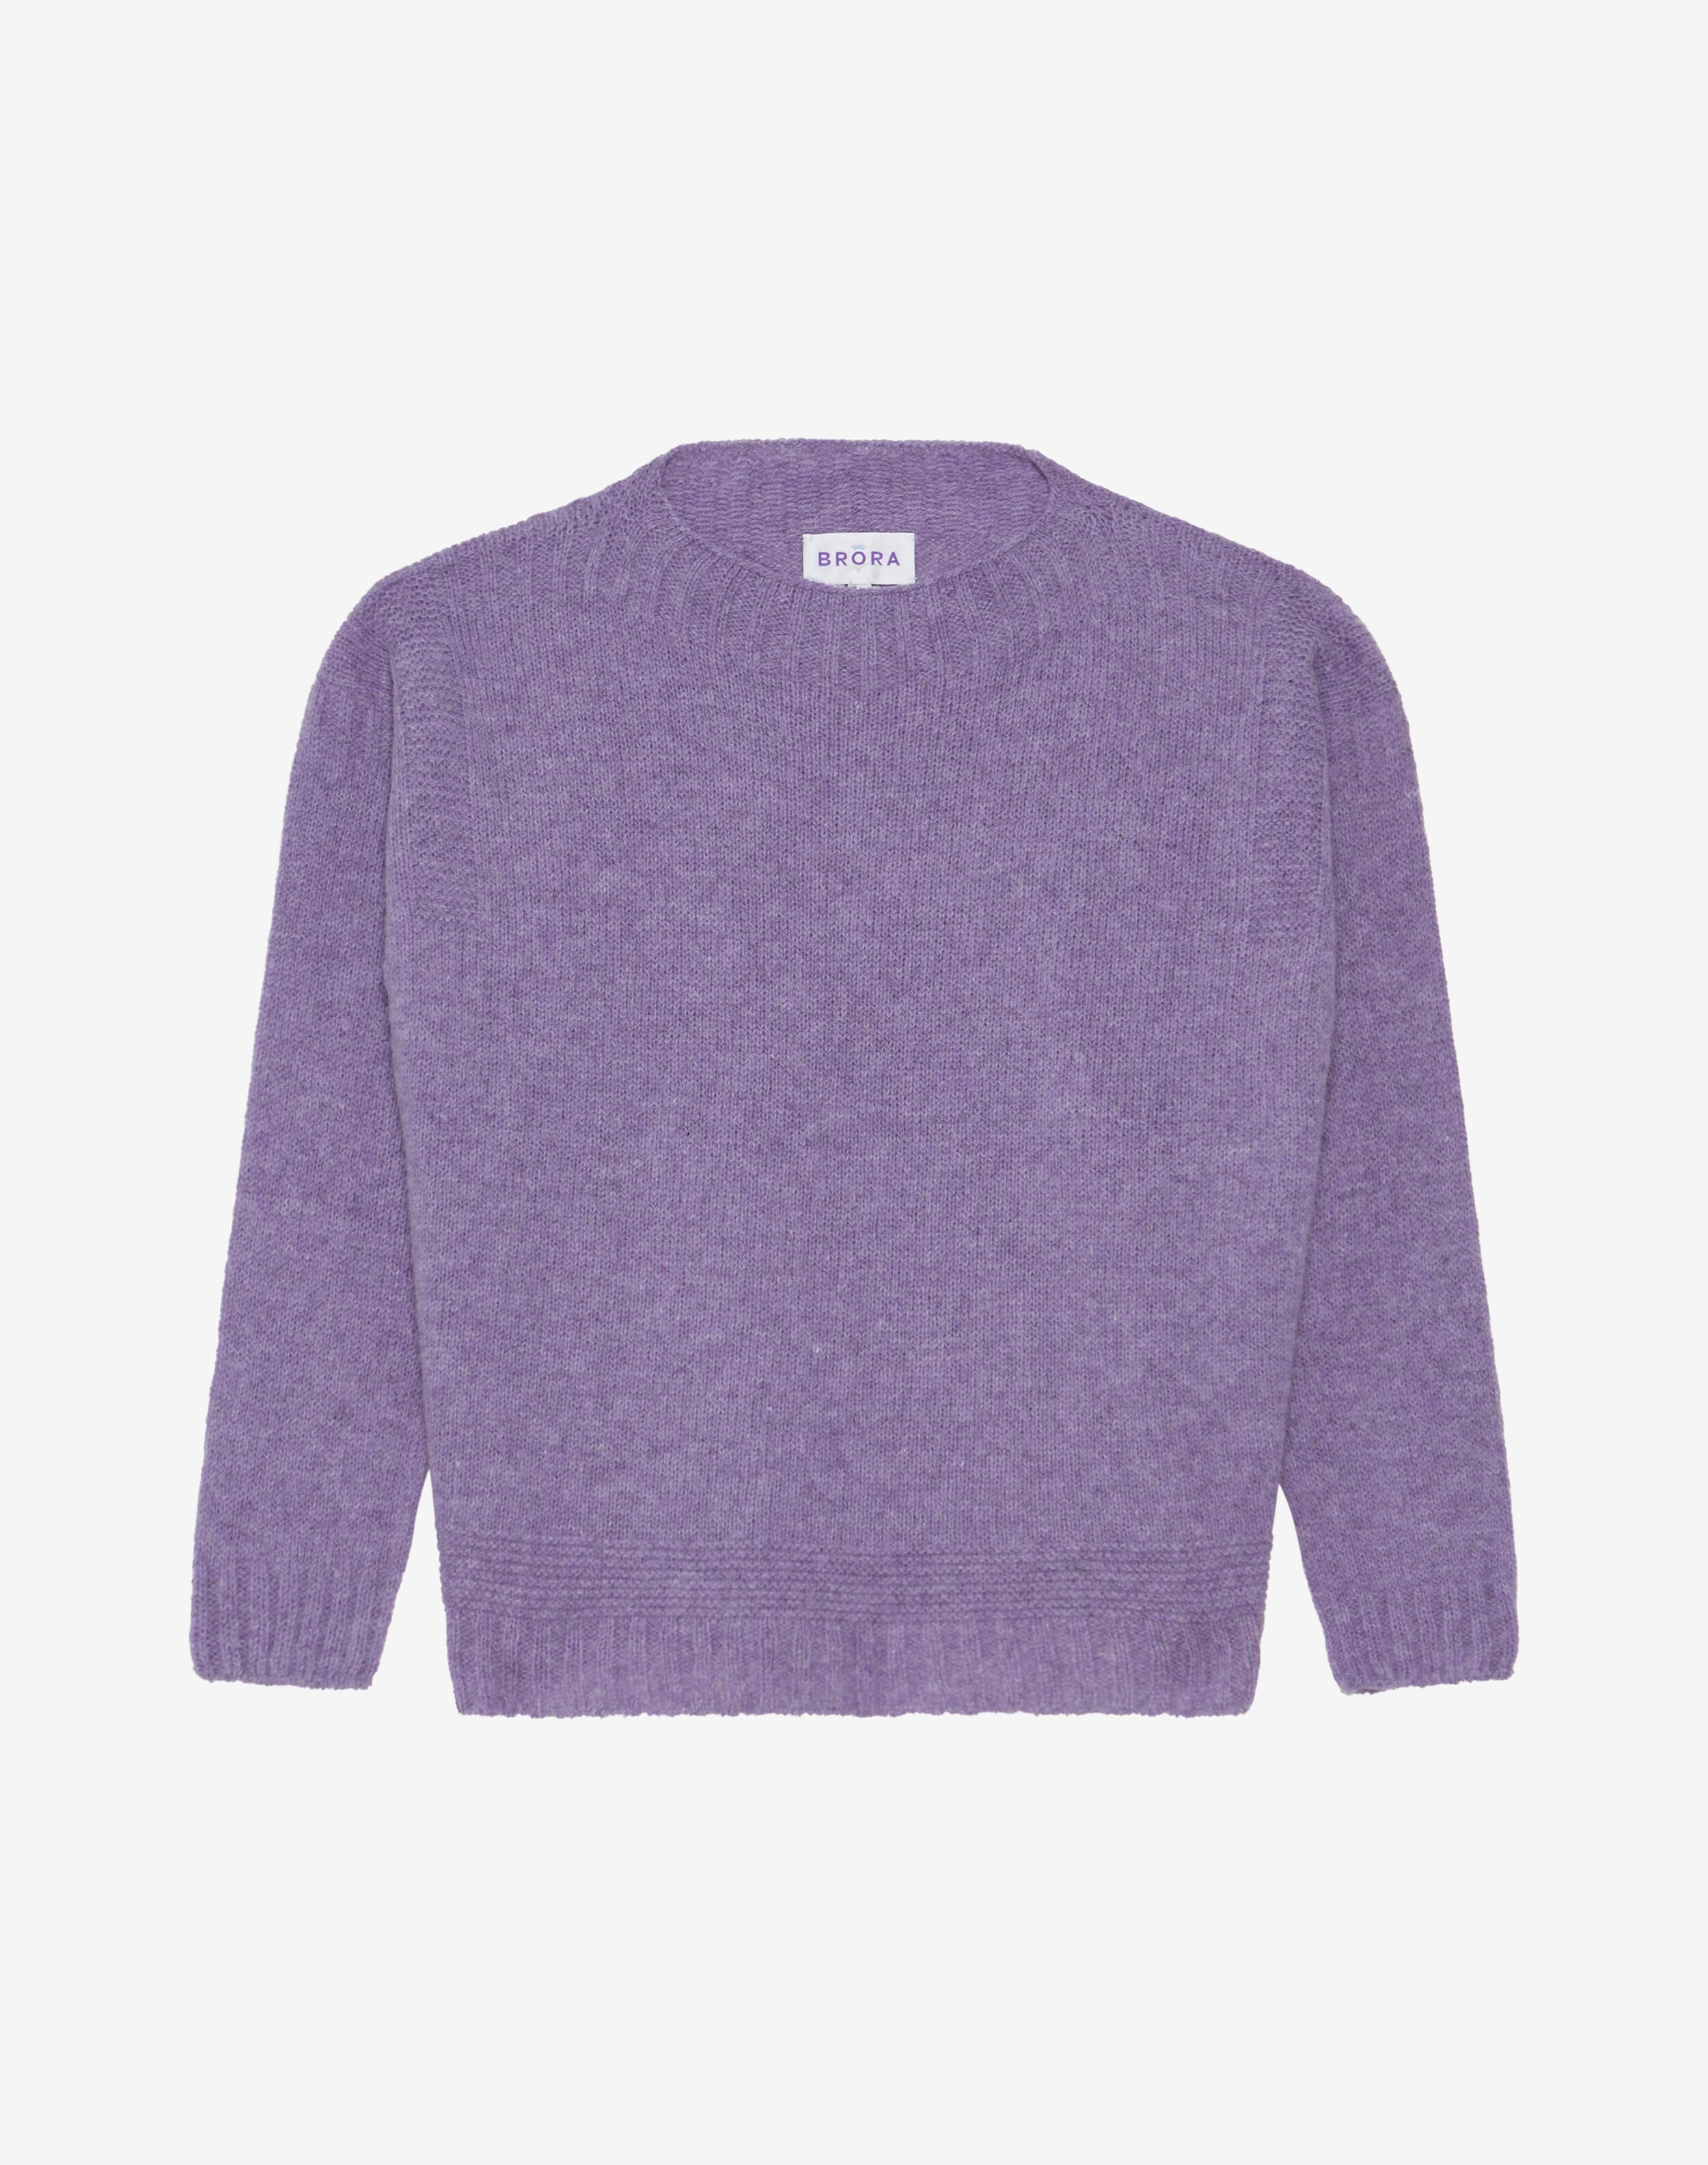 Wool Guernsey Jumper in Crocus | Knitwear | Brora